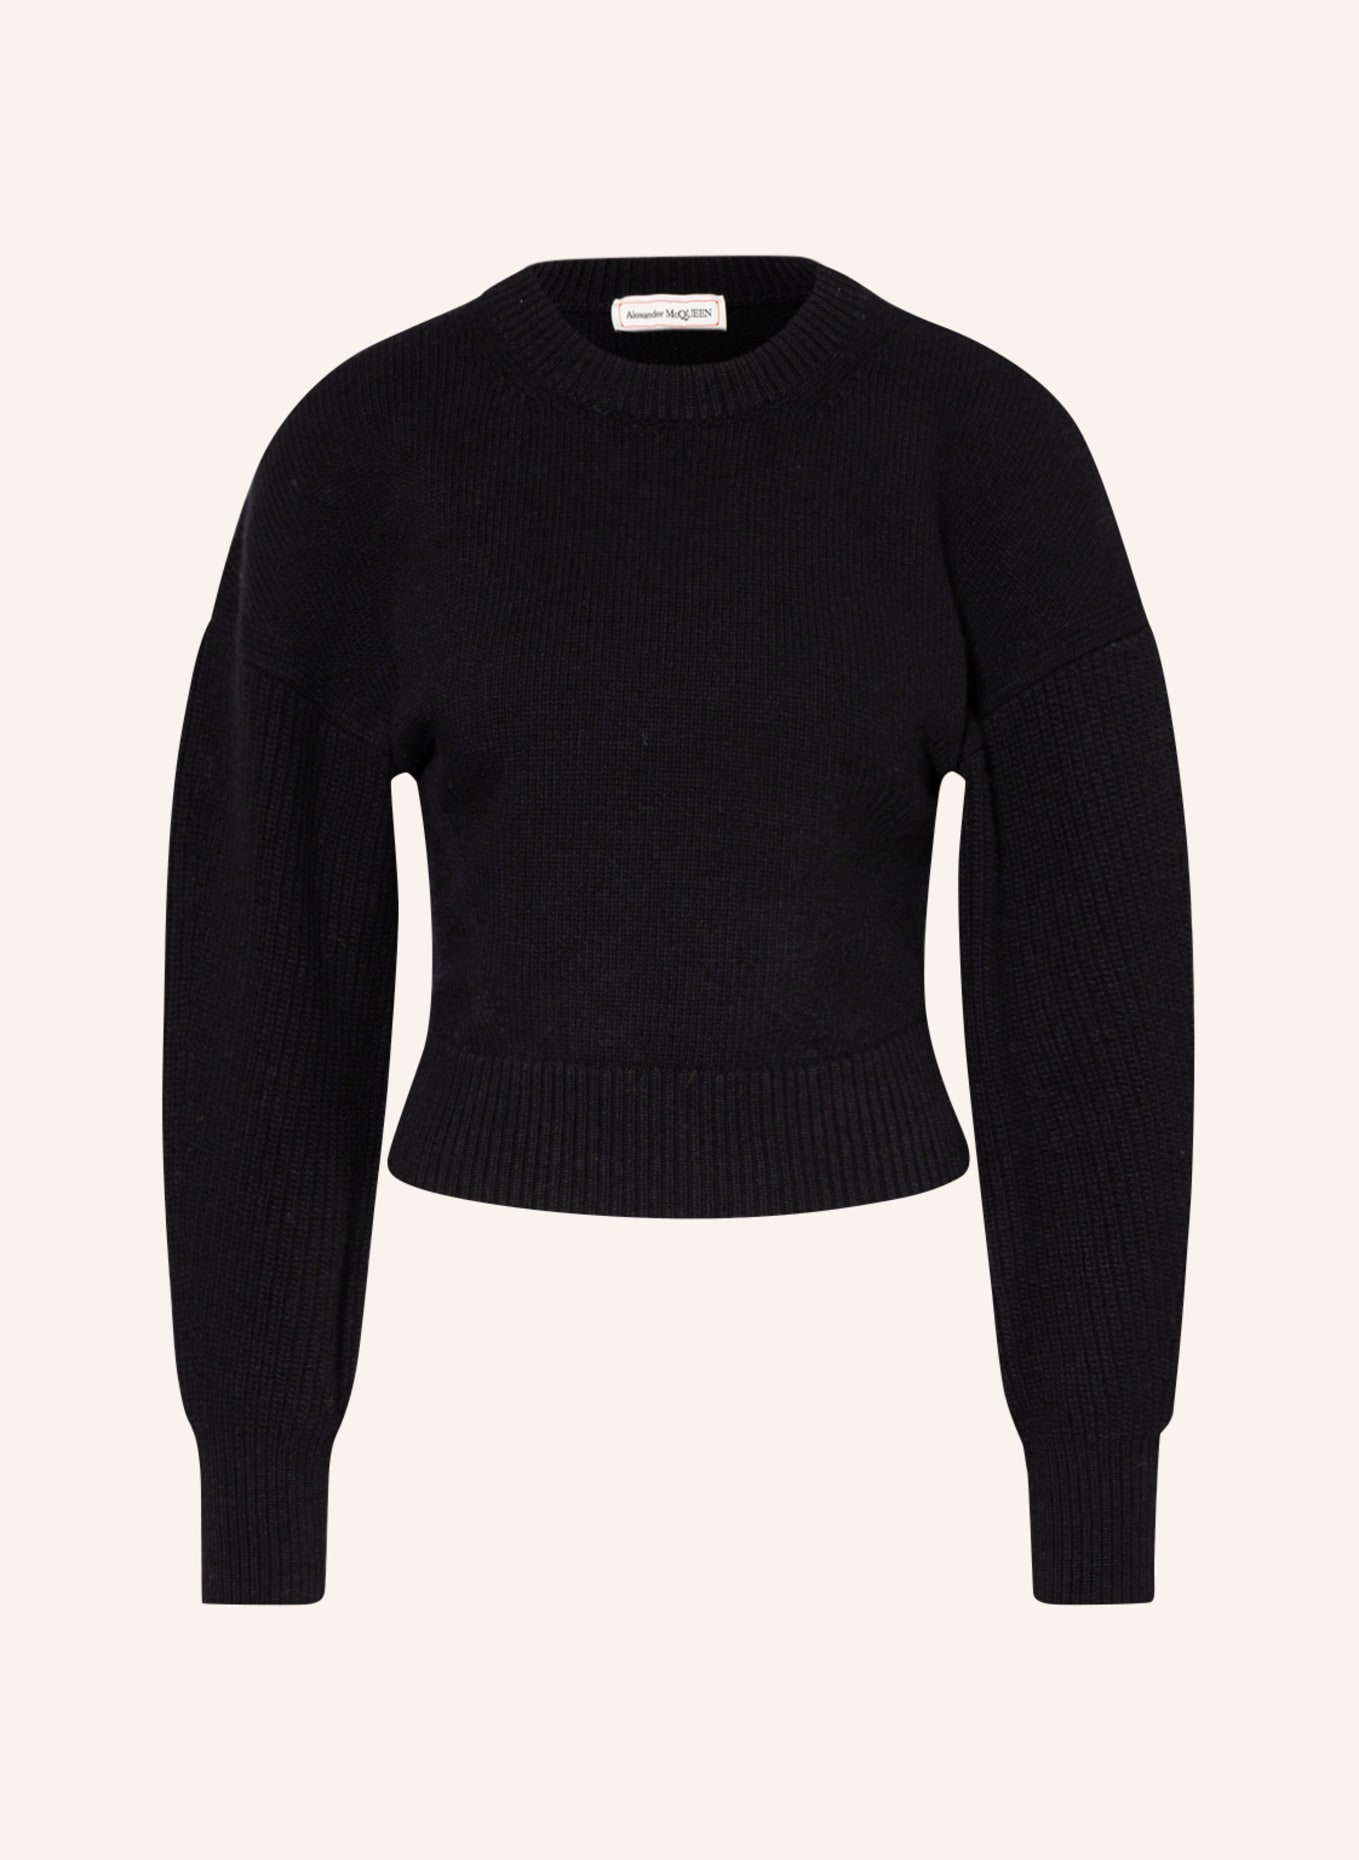 Alexander McQUEEN Cropped-Pullover, Farbe: SCHWARZ (Bild 1)